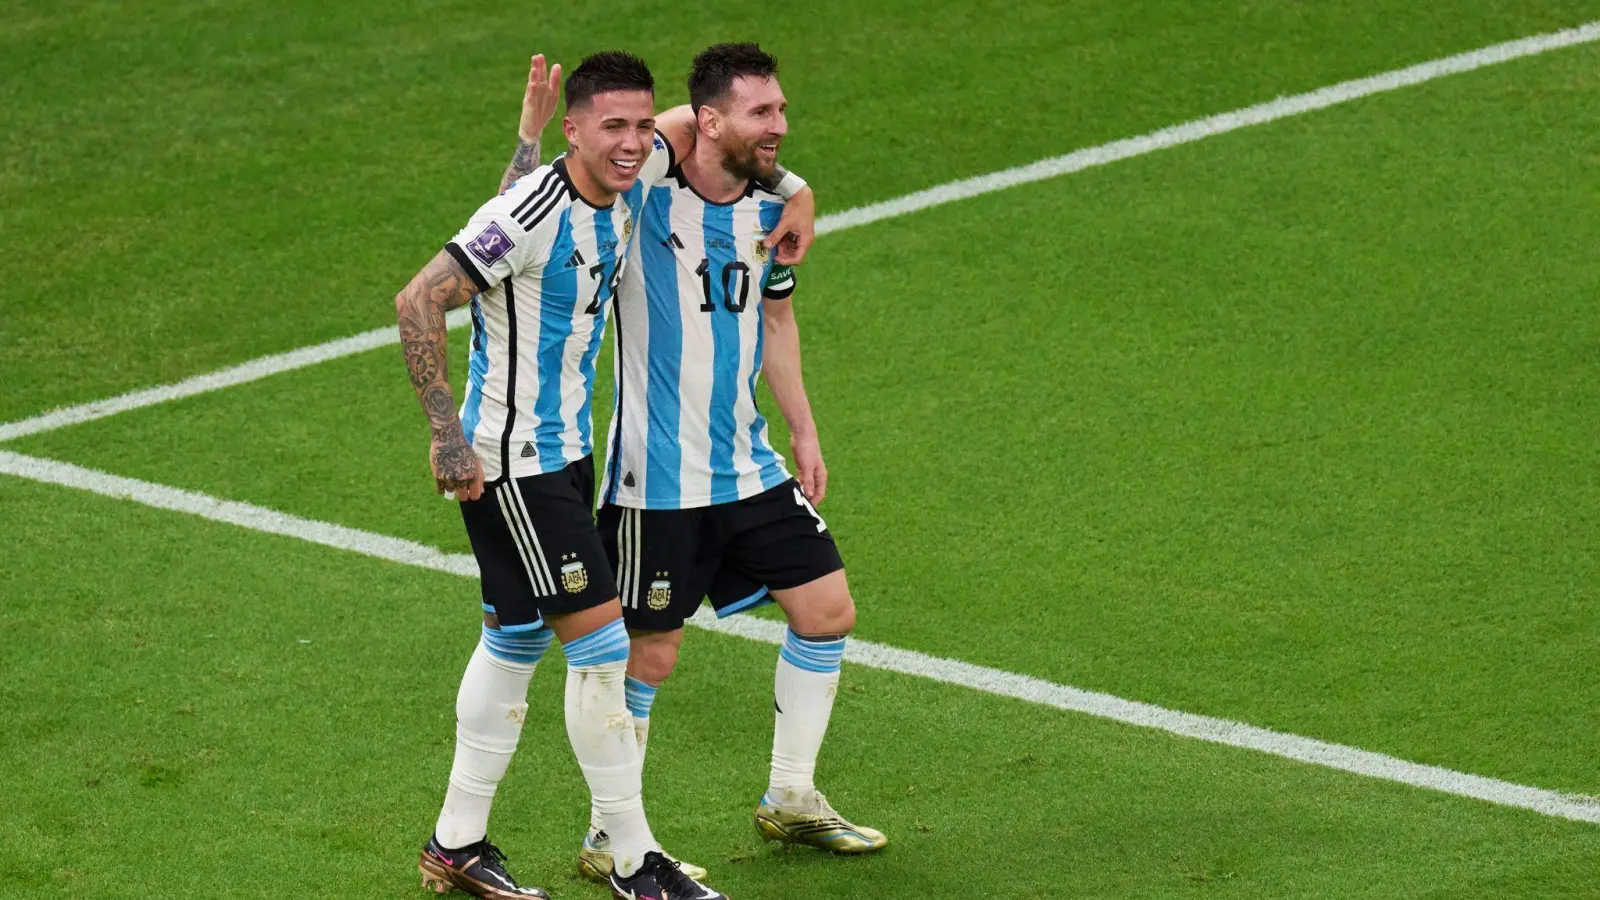 Die Argentinier Enzo Fernandez (l) und Lionel Messi jubeln gemeinsam nach einem Tor. (Foto: Meng Dingbo/Xinhua/dpa)